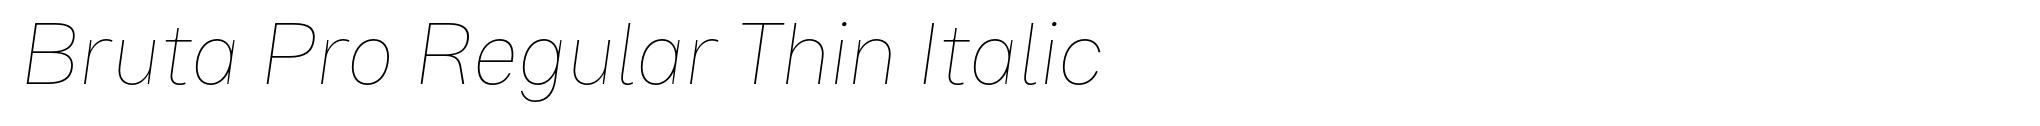 Bruta Pro Regular Thin Italic image